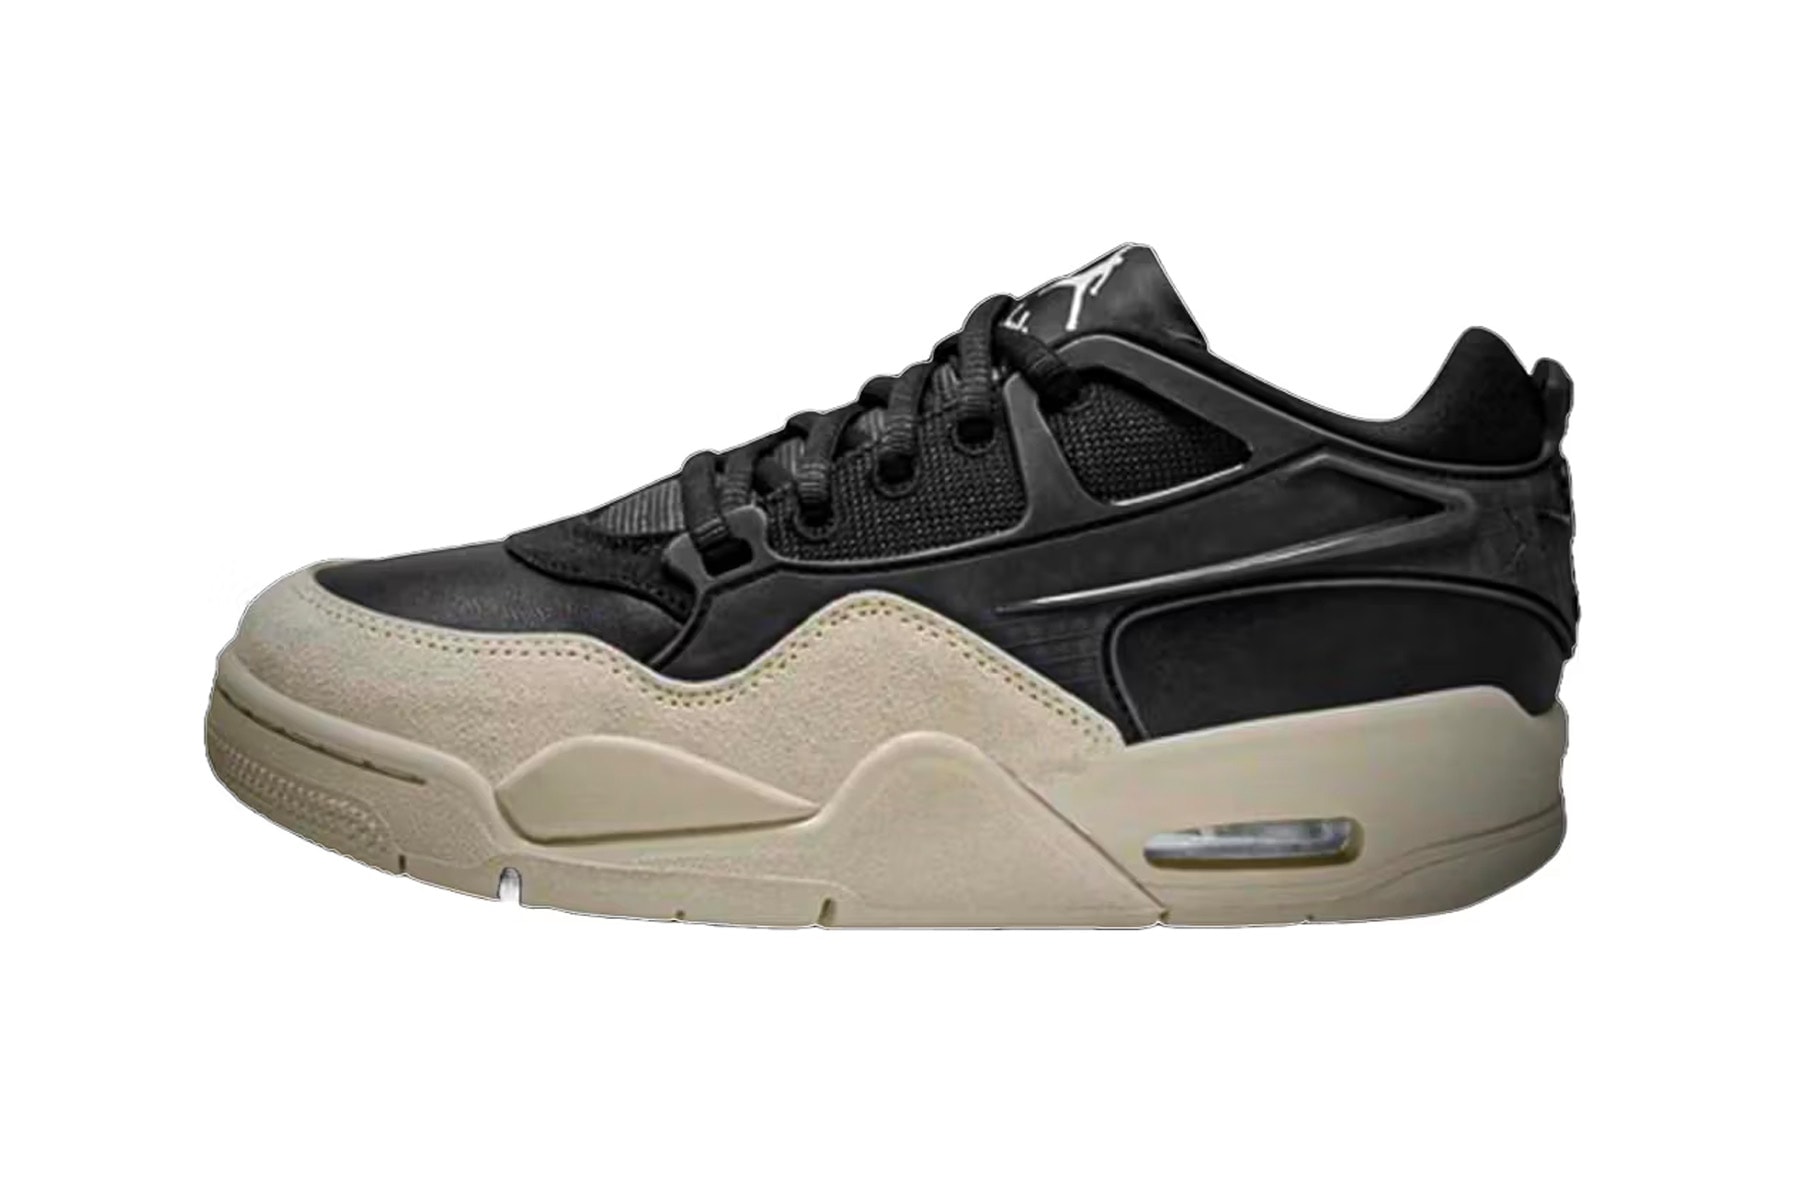 率先預覽 Jordan Brand 全新鞋型 Air Jordan 4 RM